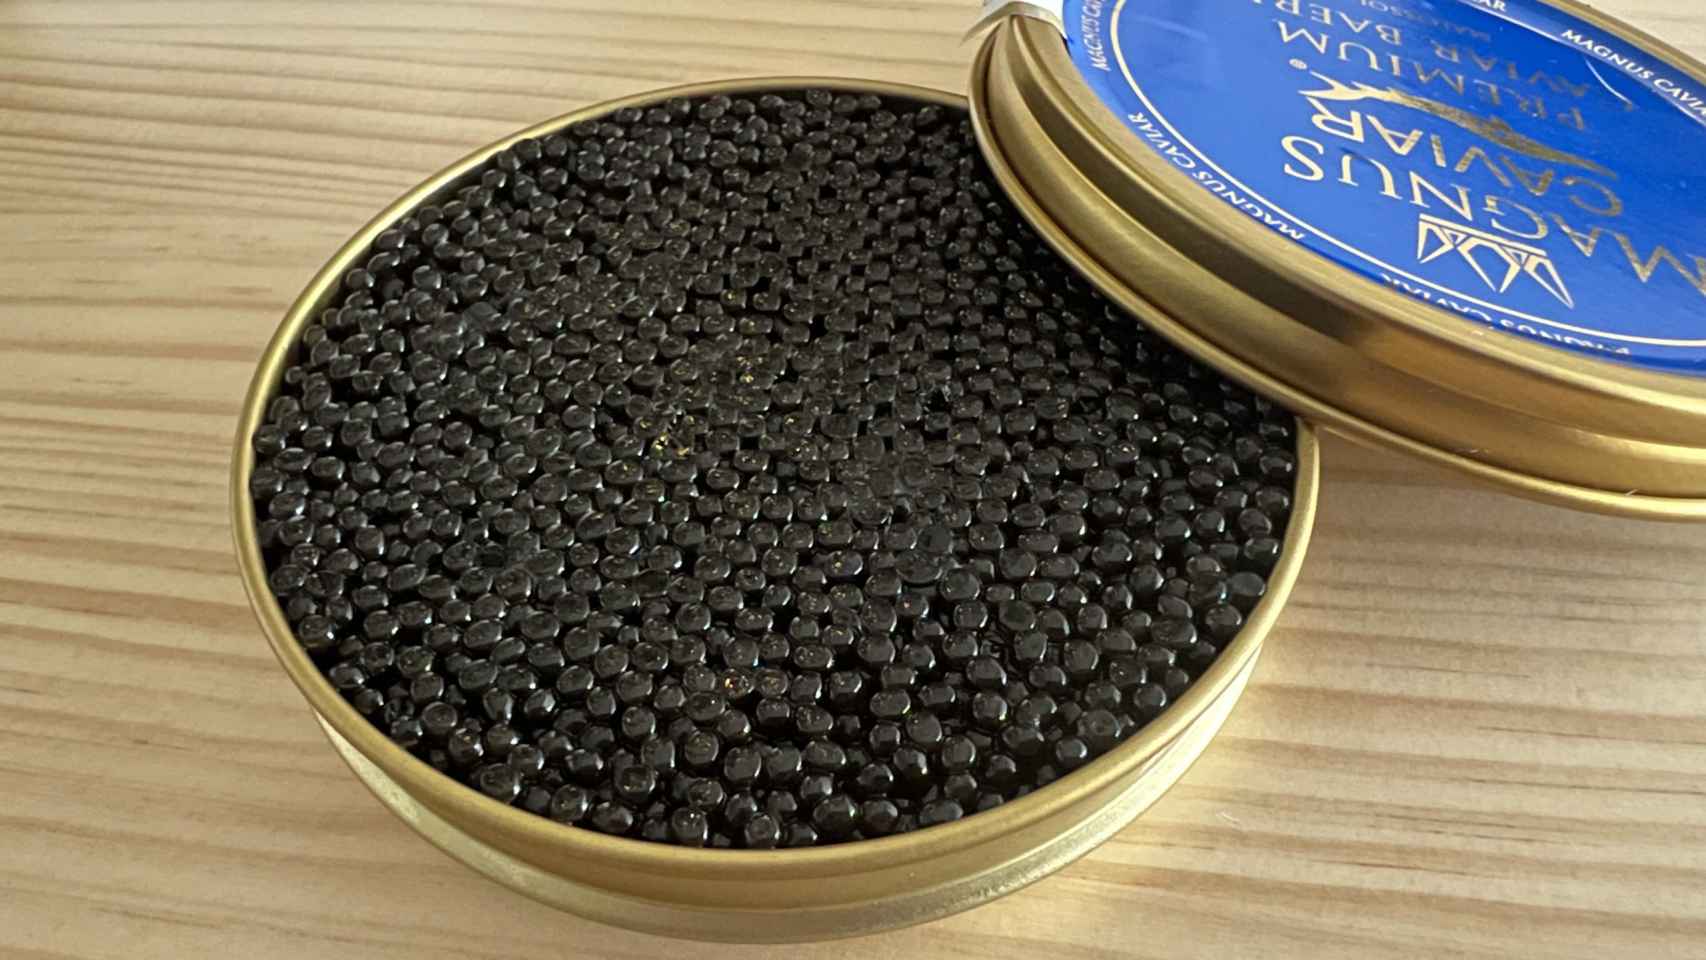 Detalle del tamaño del caviar Baeris